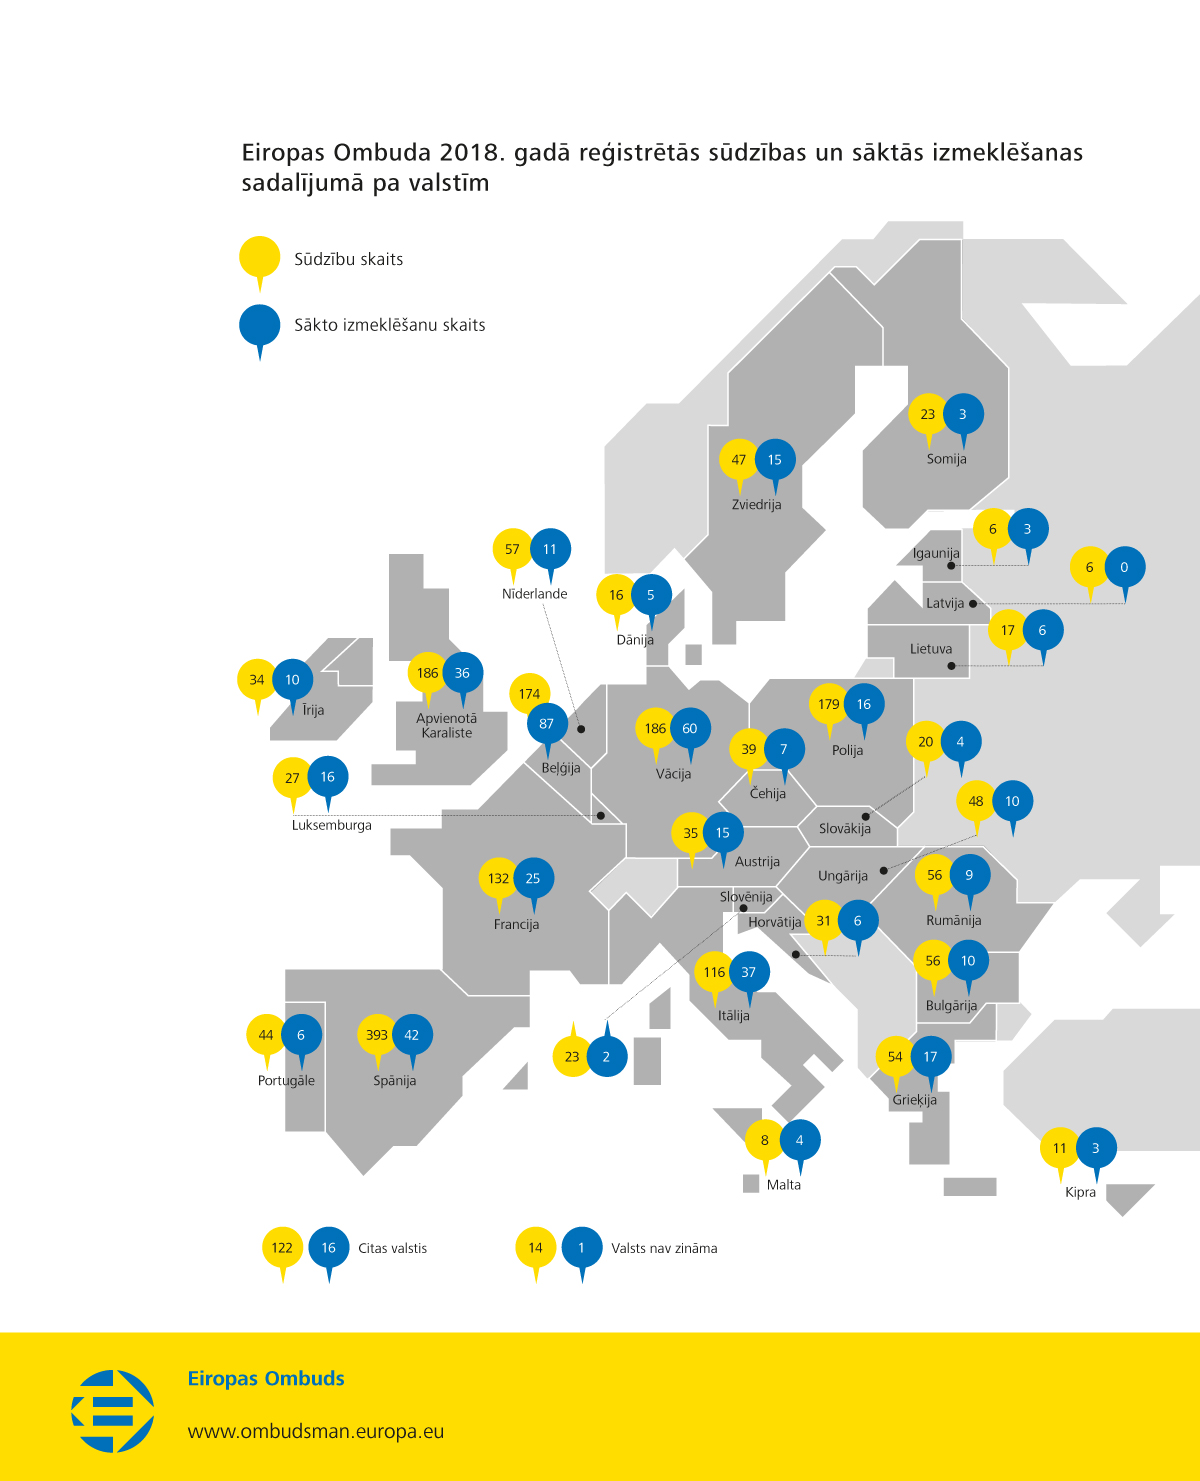 Eiropas Ombuda 2018. gadā reģistrētās sūdzības un sāktās izmeklēšanas sadalījumā pa valstīm